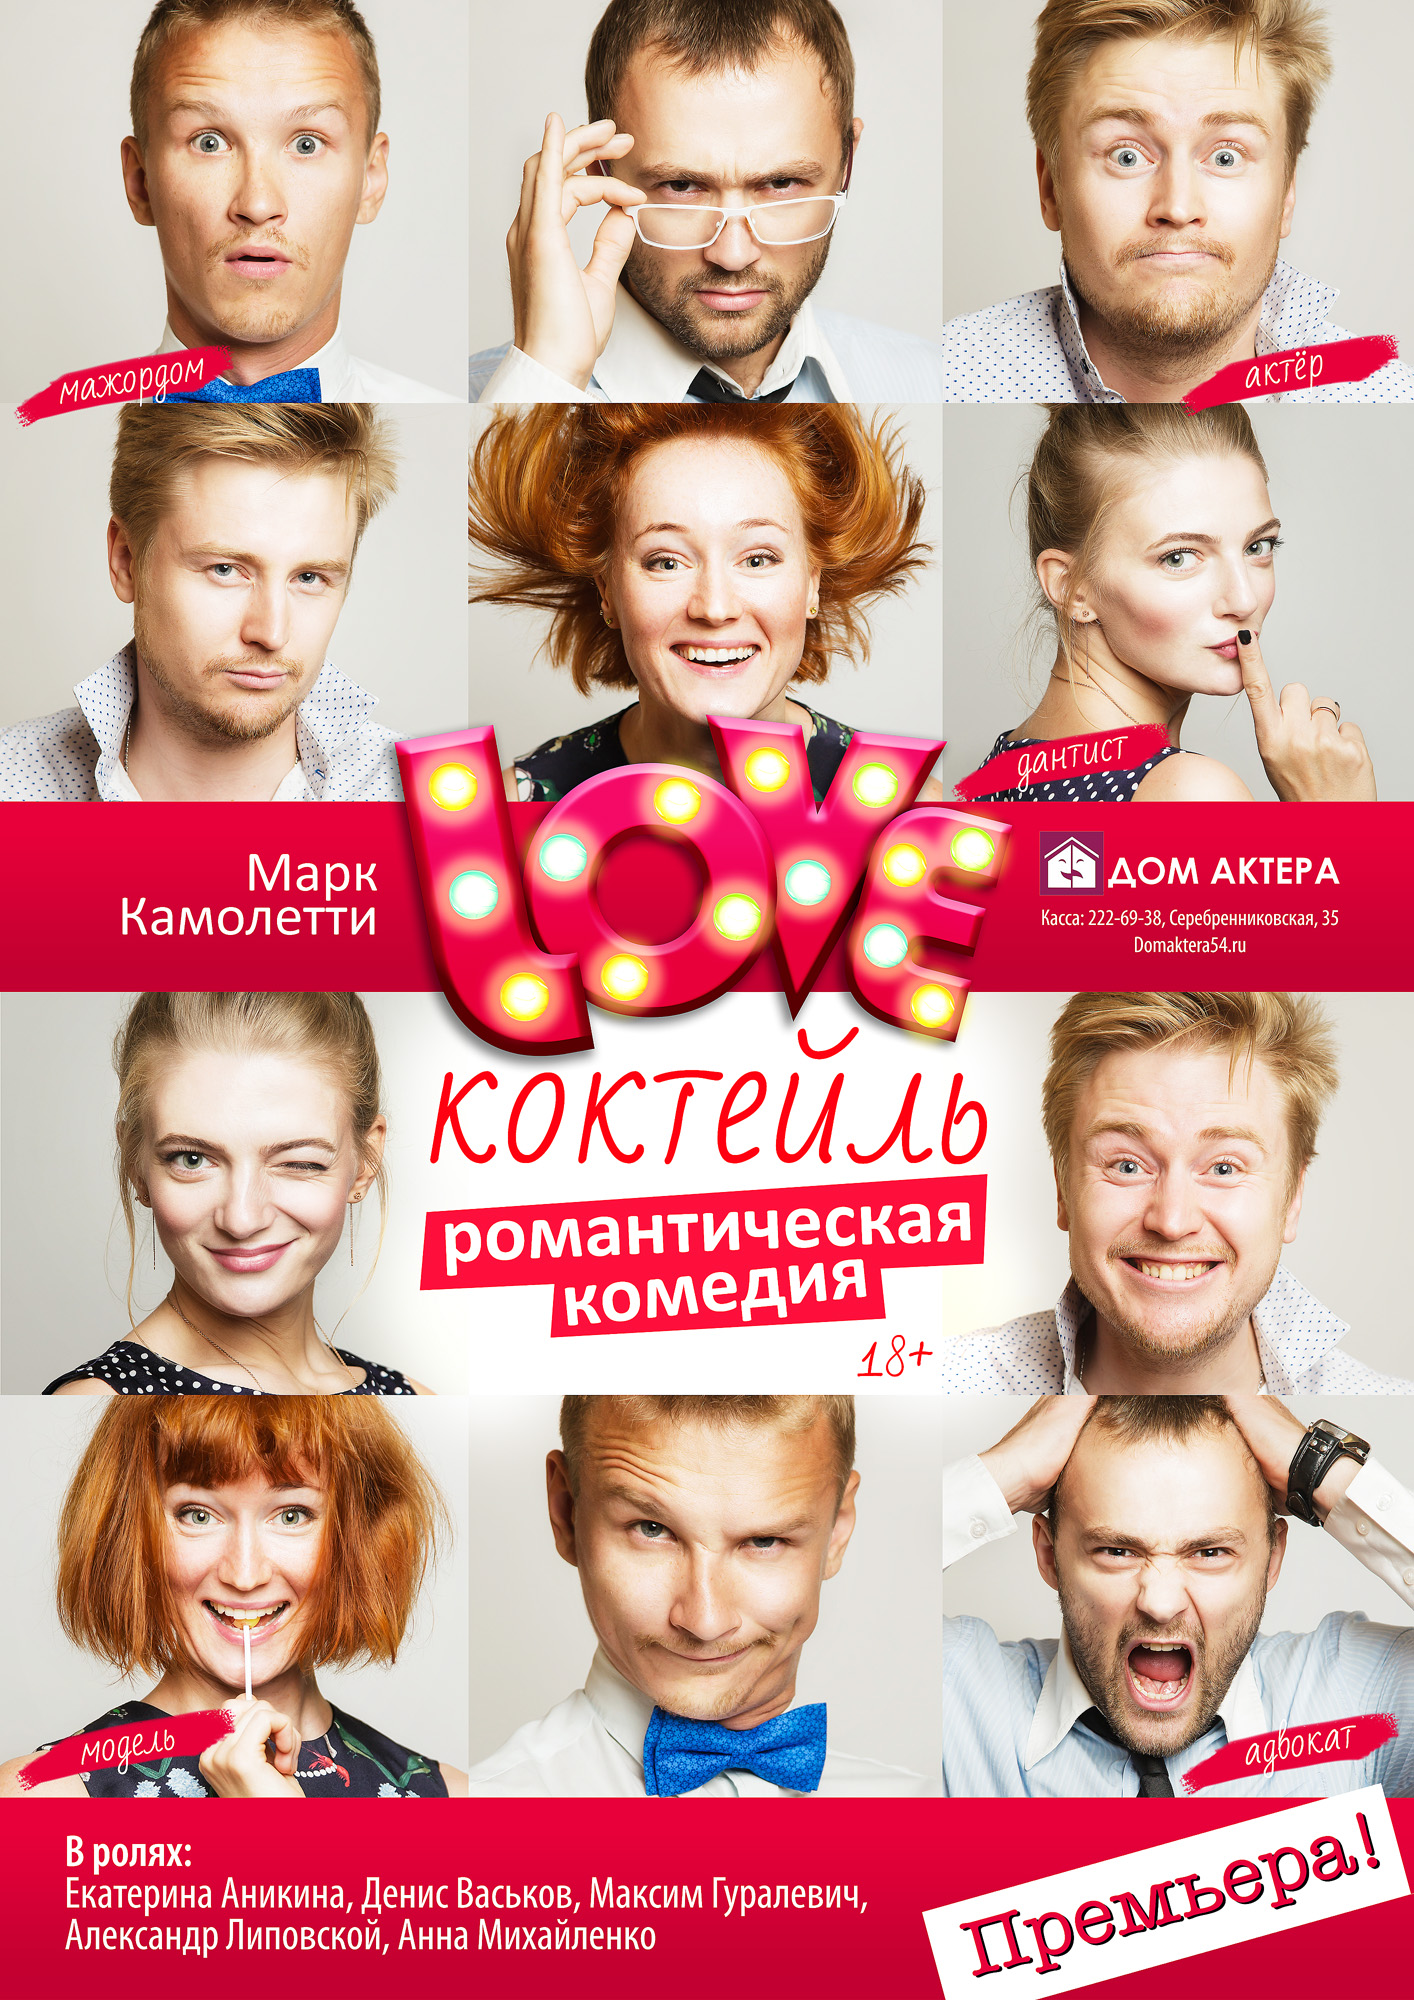 Афиша новосибирск. Афиша с актерами. Плакат артиста. Актеры дом актера Новосибирск. Афиша много артистов.